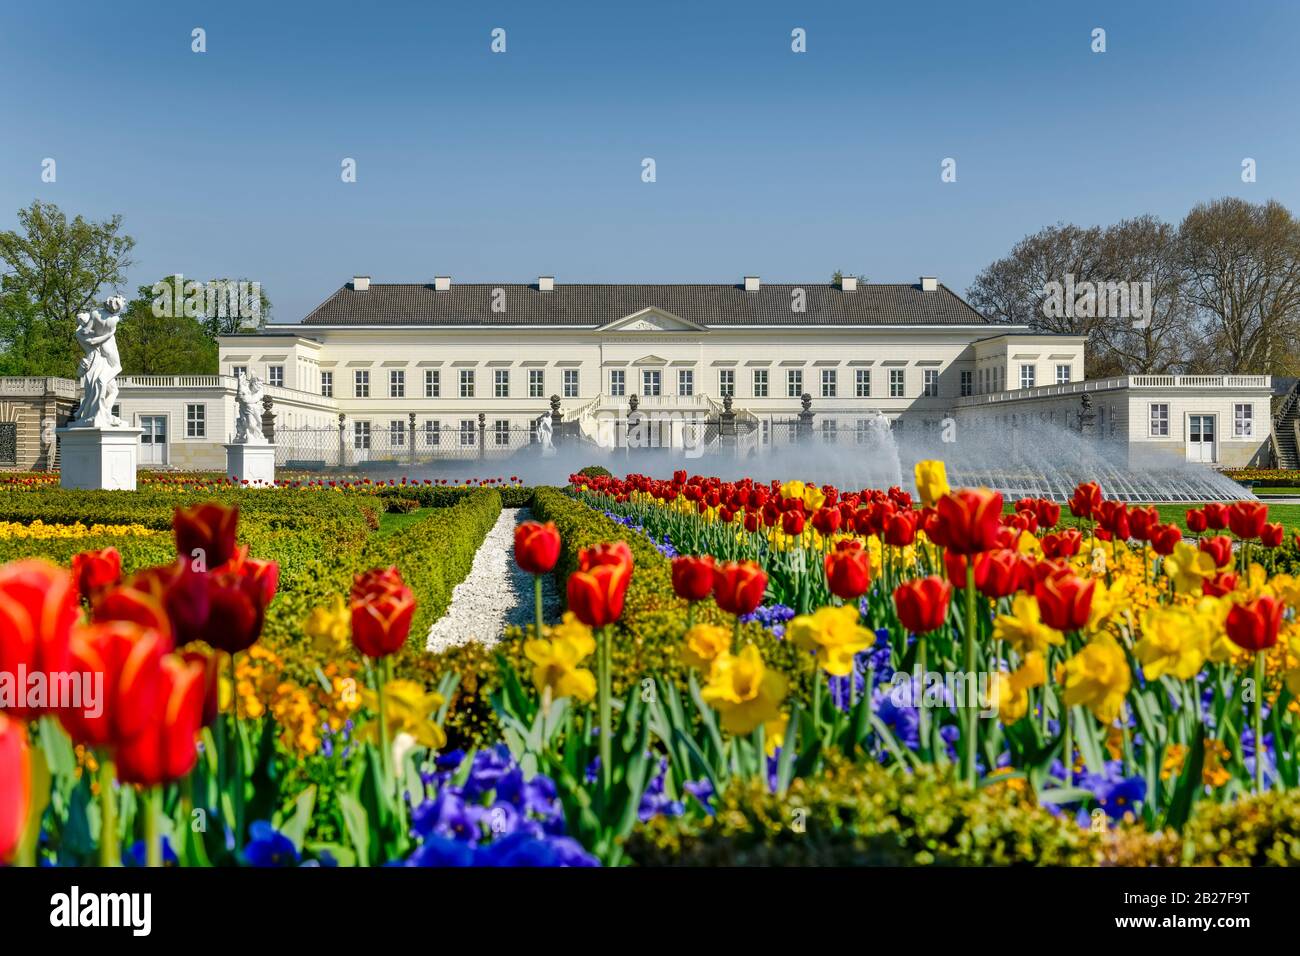 Tulpenbeete, Glockenfontäne, Schloß, Großer Garten, Herrenhäuser Gärten, Hannover, Niedersachsen, Deutschland Stock Photo